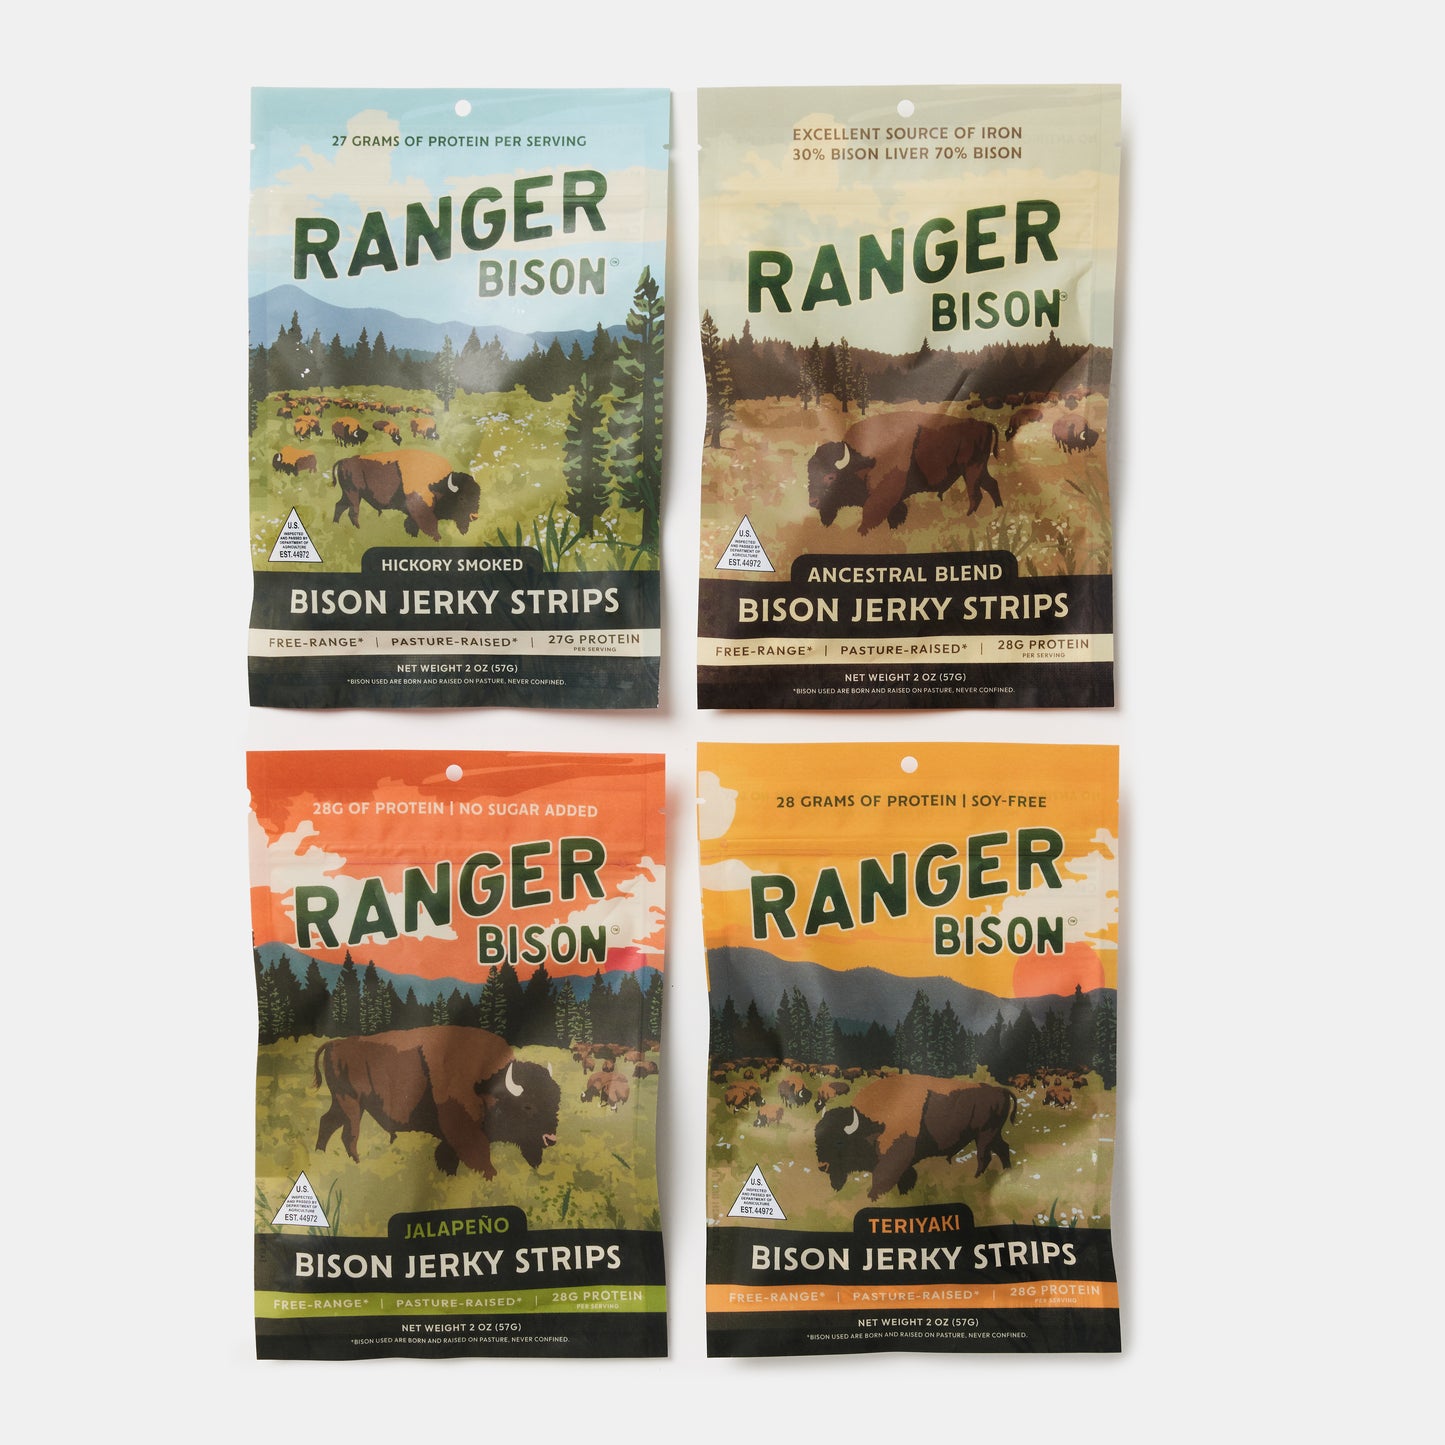 Ranger Bison Sampler Pack